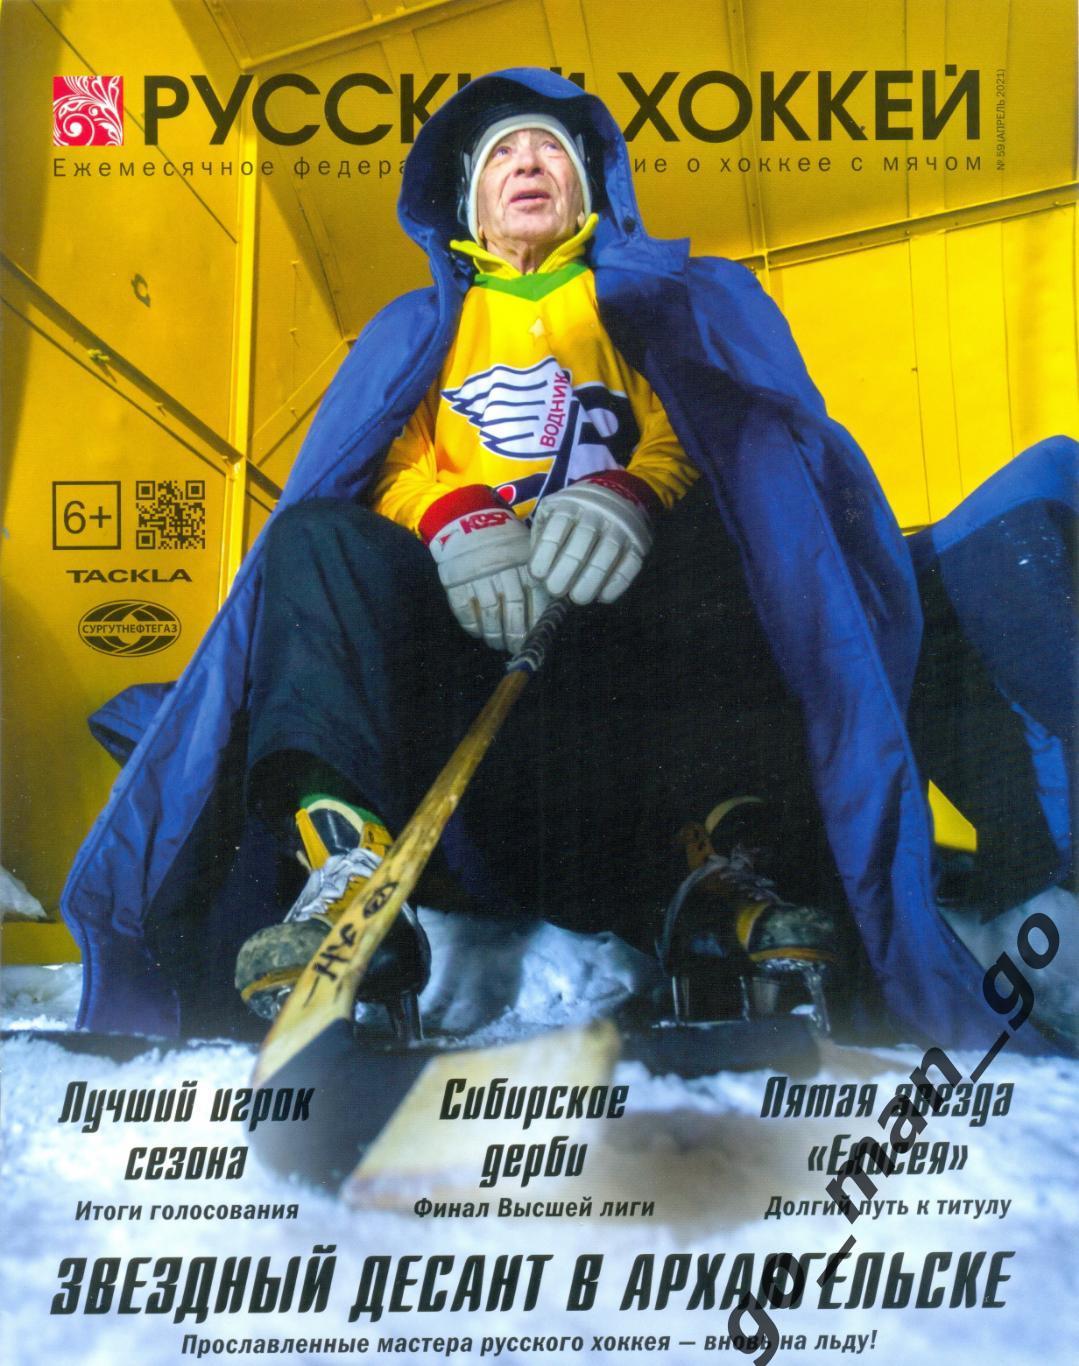 Журнал РУССКИЙ ХОККЕЙ № 59, апрель 2021.